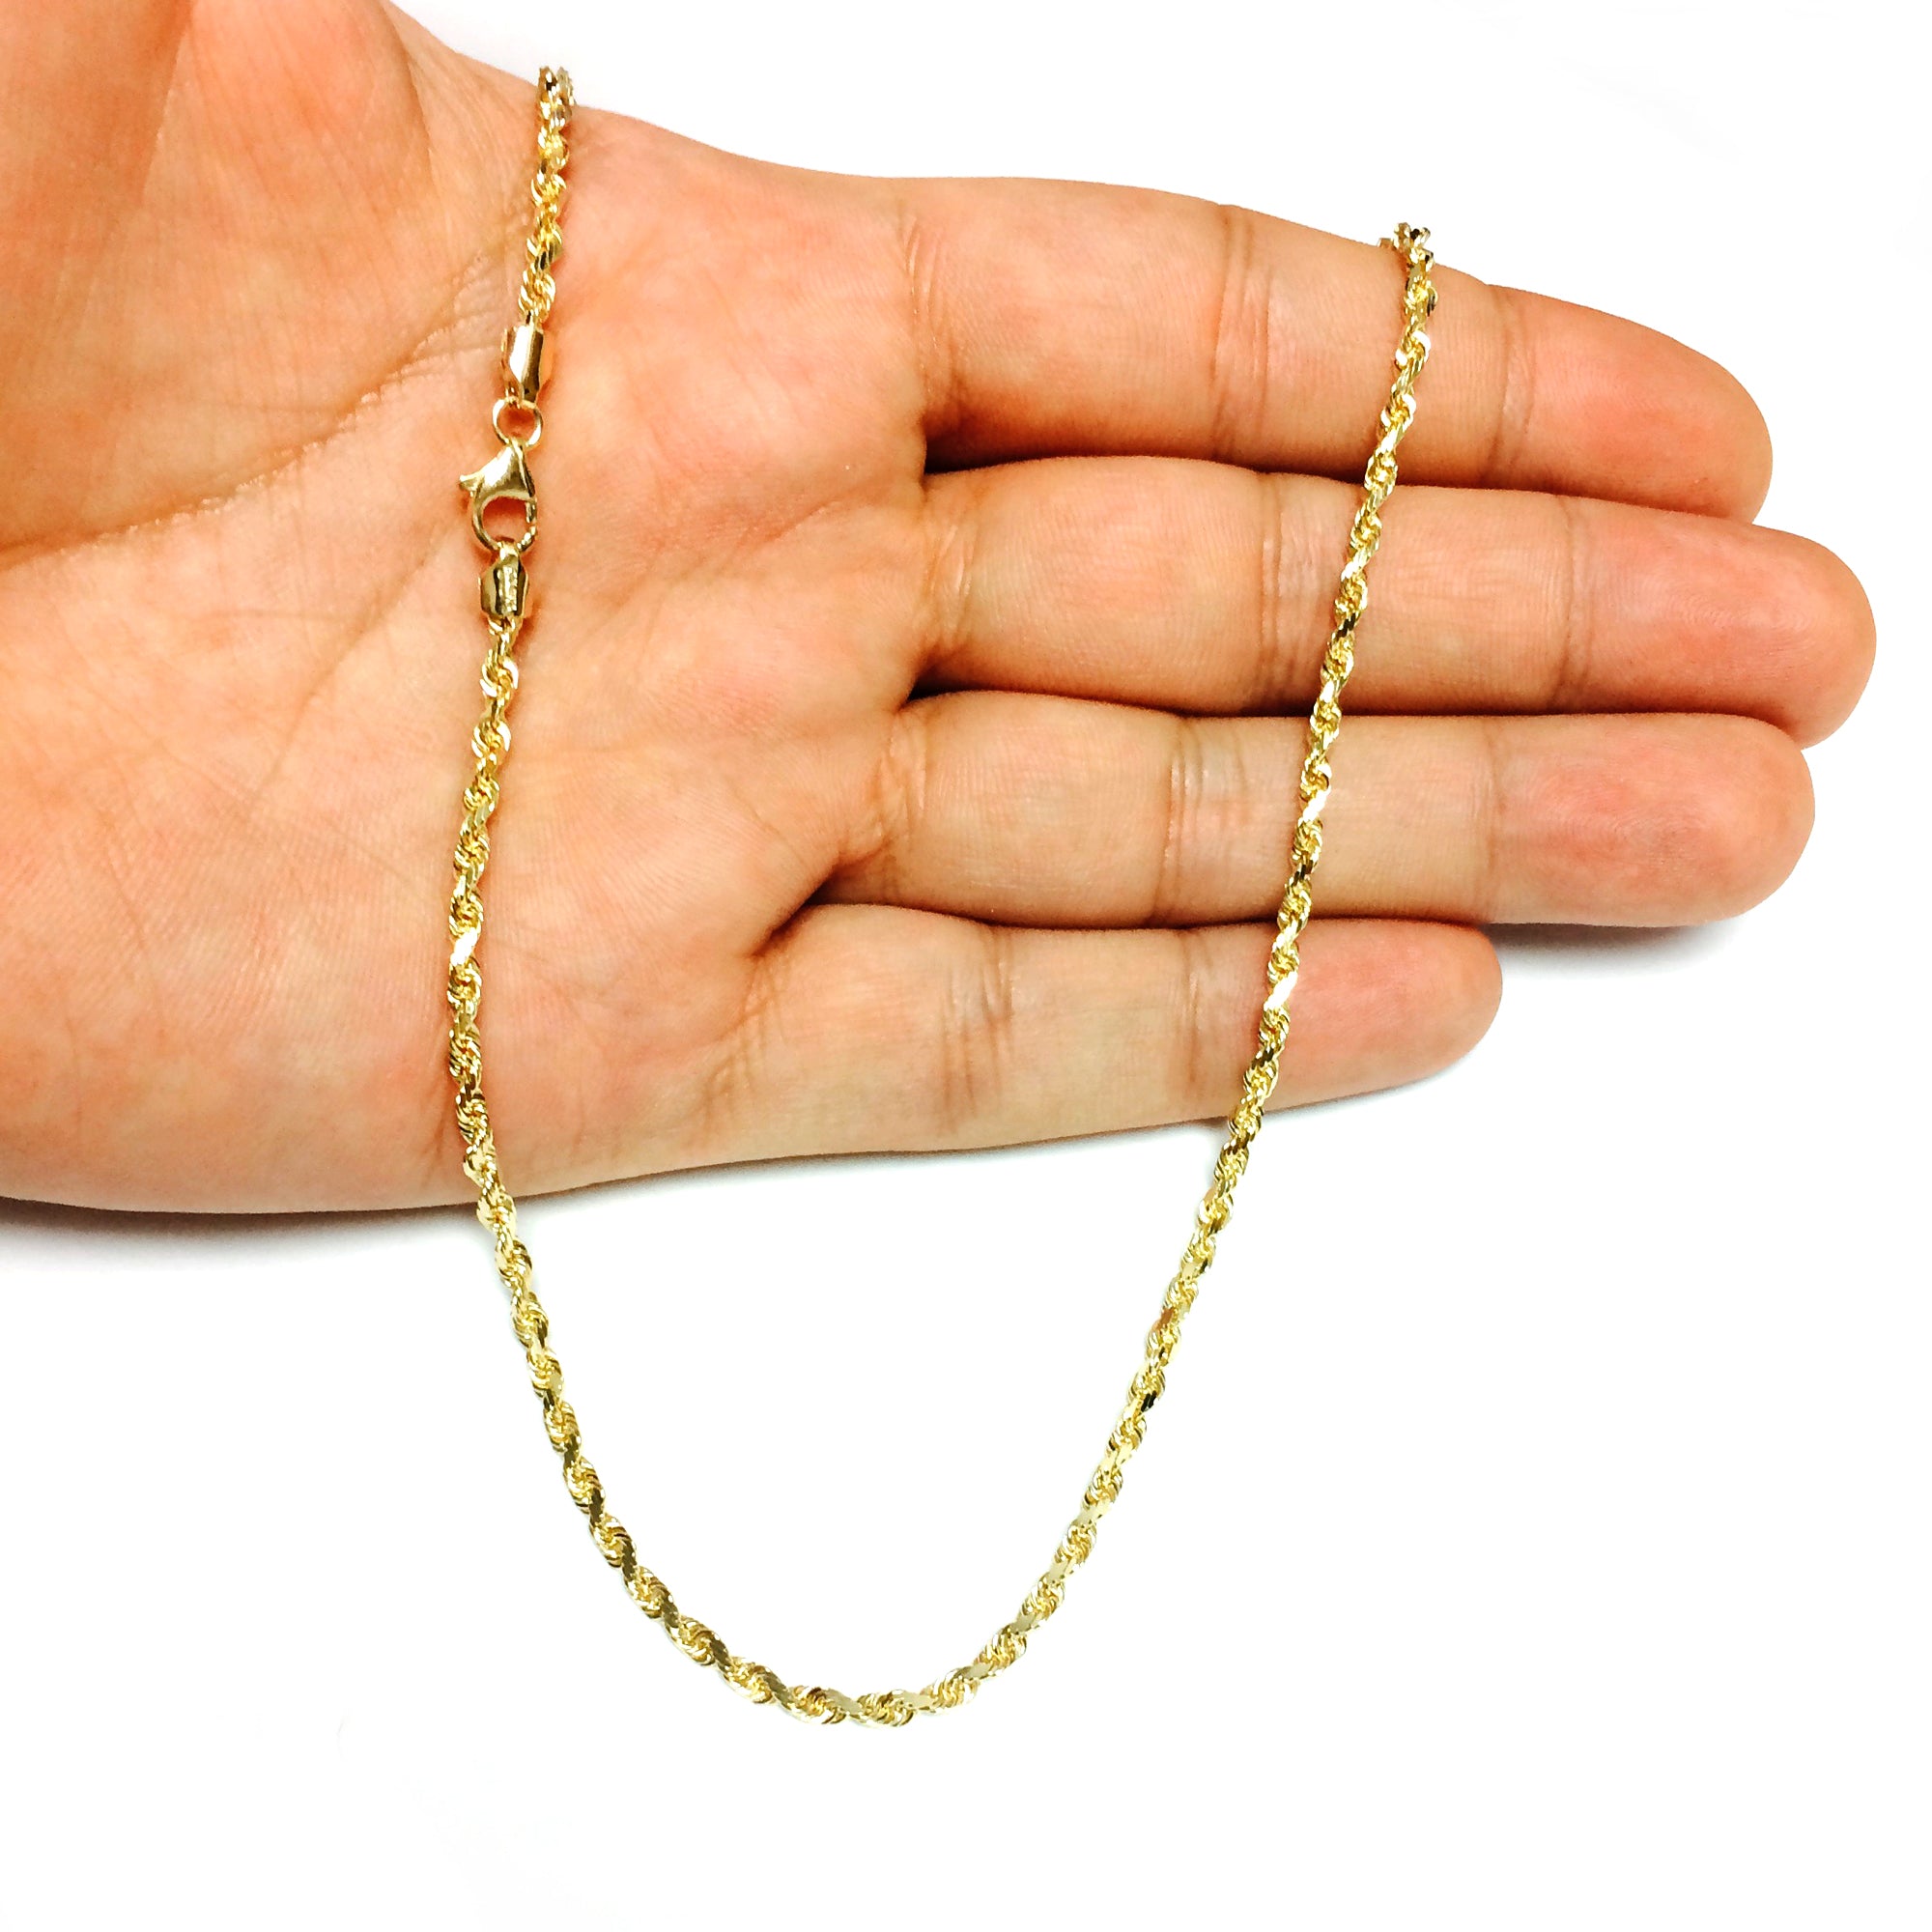 10 k gult massivt guld diamantskuret repkedja halsband, 3 mm fina designersmycken för män och kvinnor